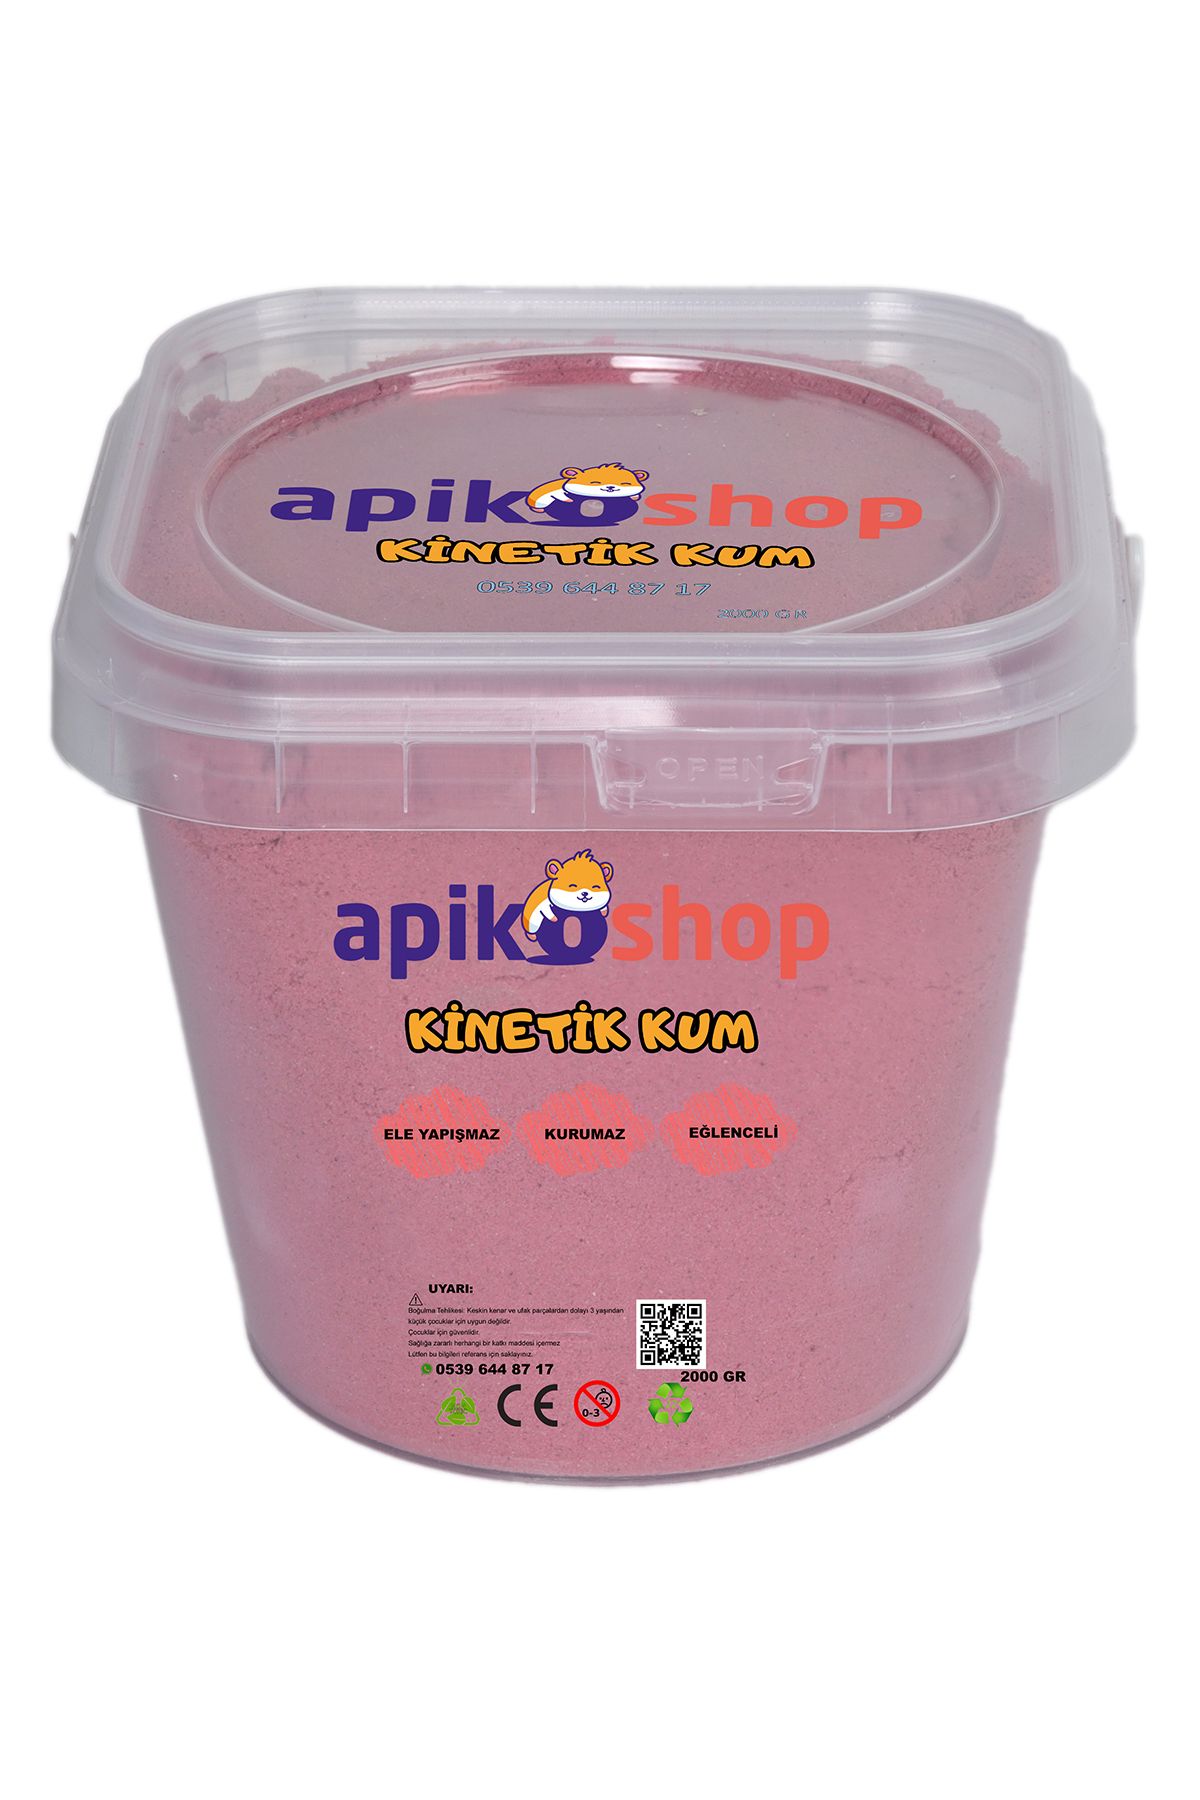 Apiko Shop Kinetik Kum Oyun Kumu (2000 GR)